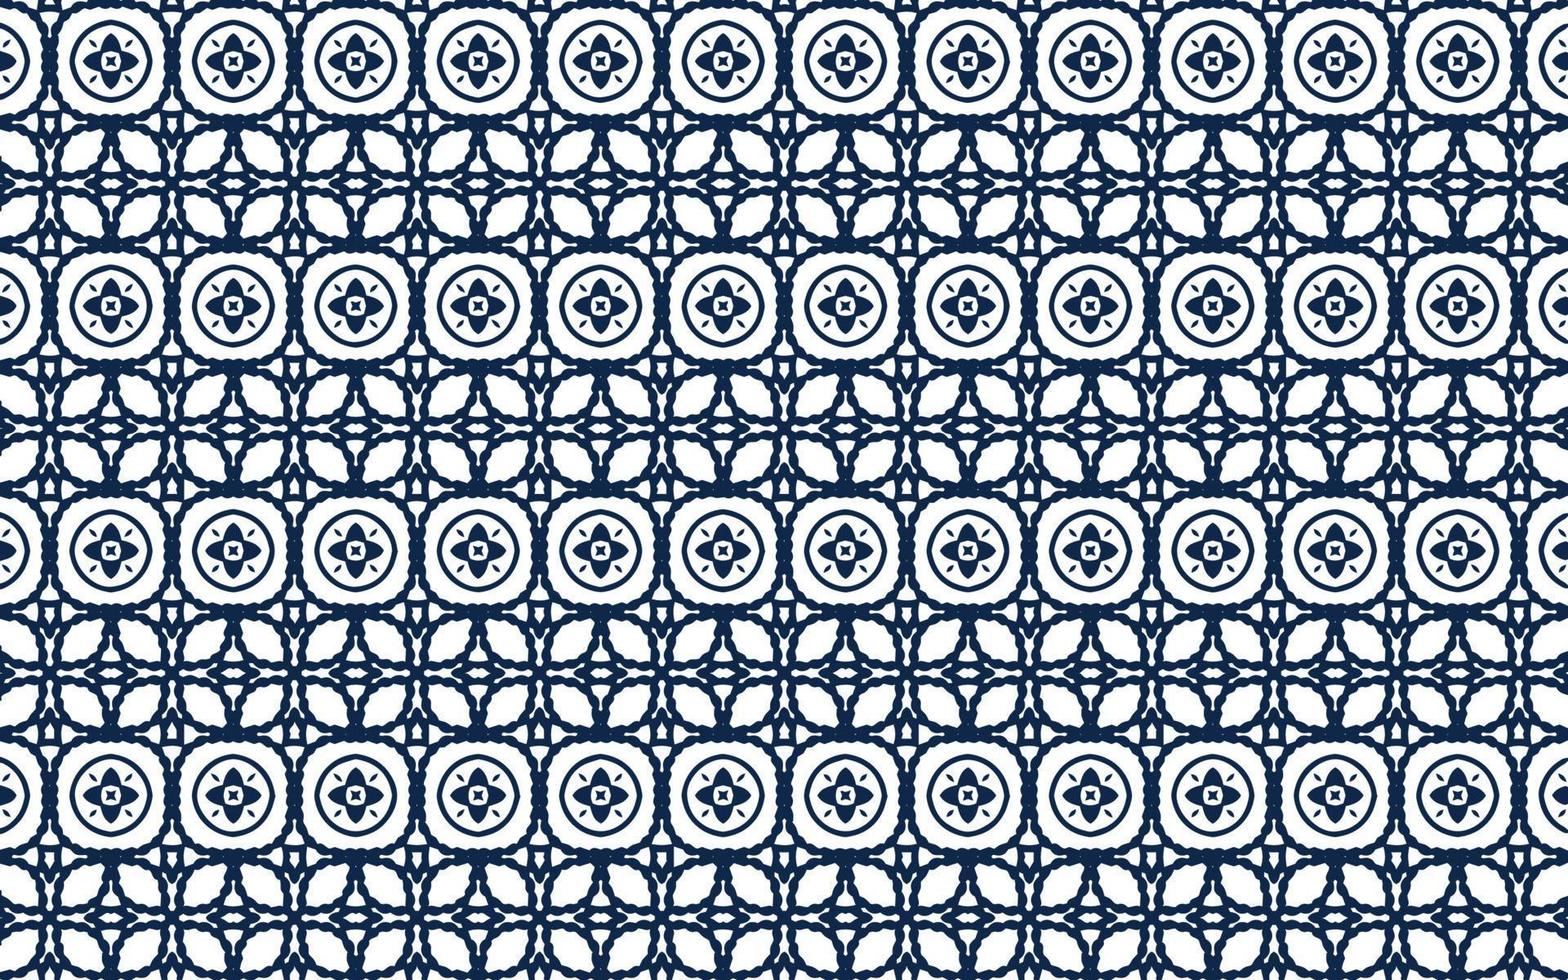 estos son diseños de patrones sin fisuras arabescos abstractos vector